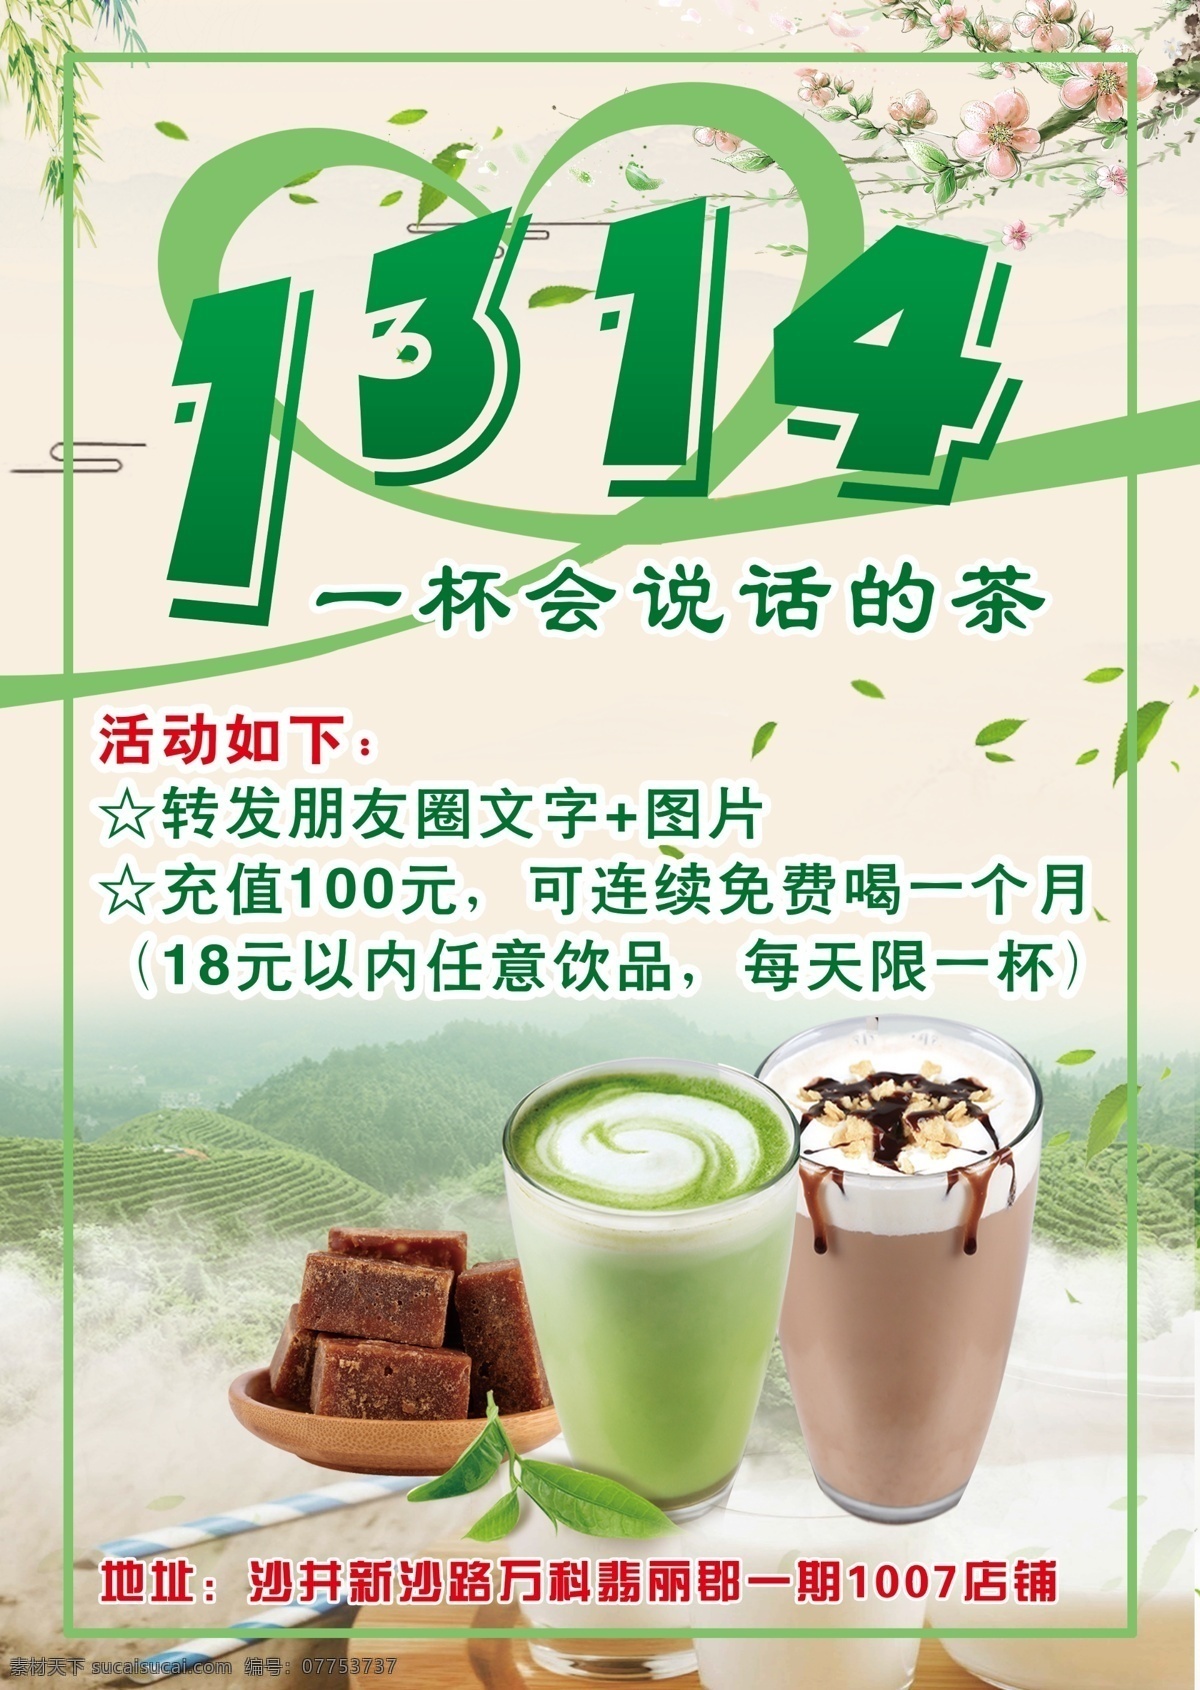 1314奶茶 奶茶宣传单 1314背景 1314 奶茶海报